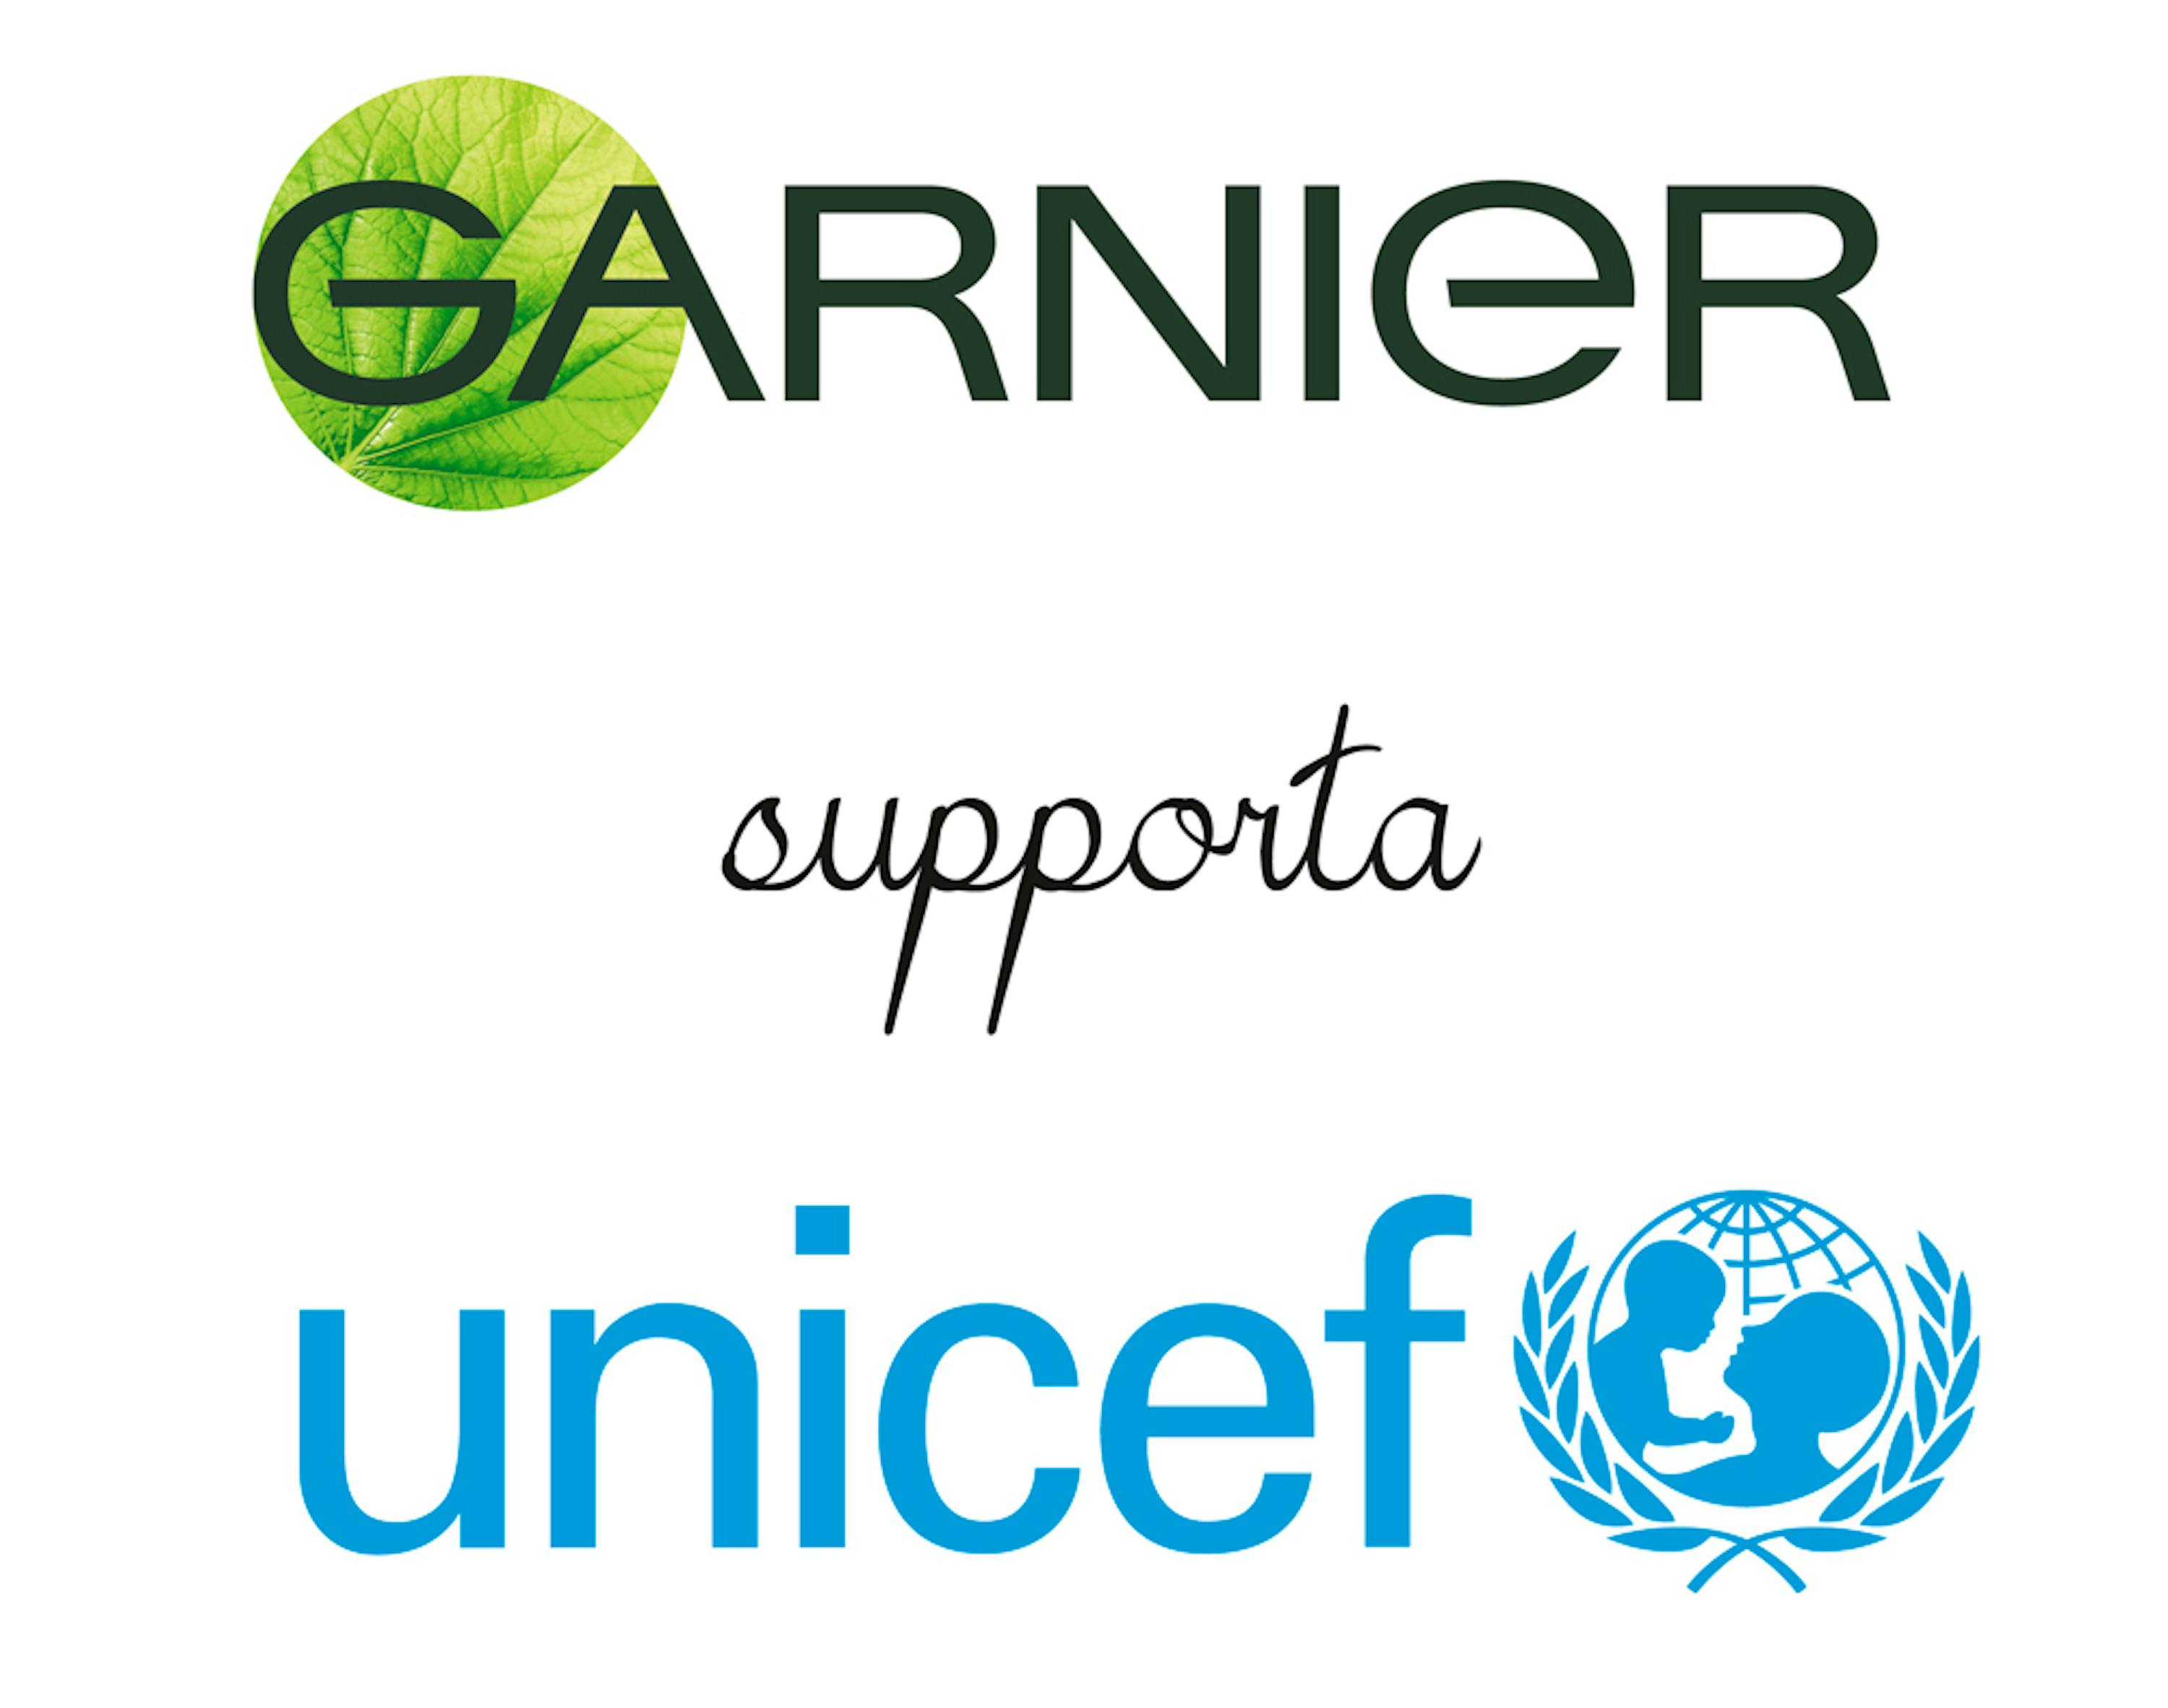 Garnier supporta l’UNICEF  per aiutare bambini in situazioni di emergenza
